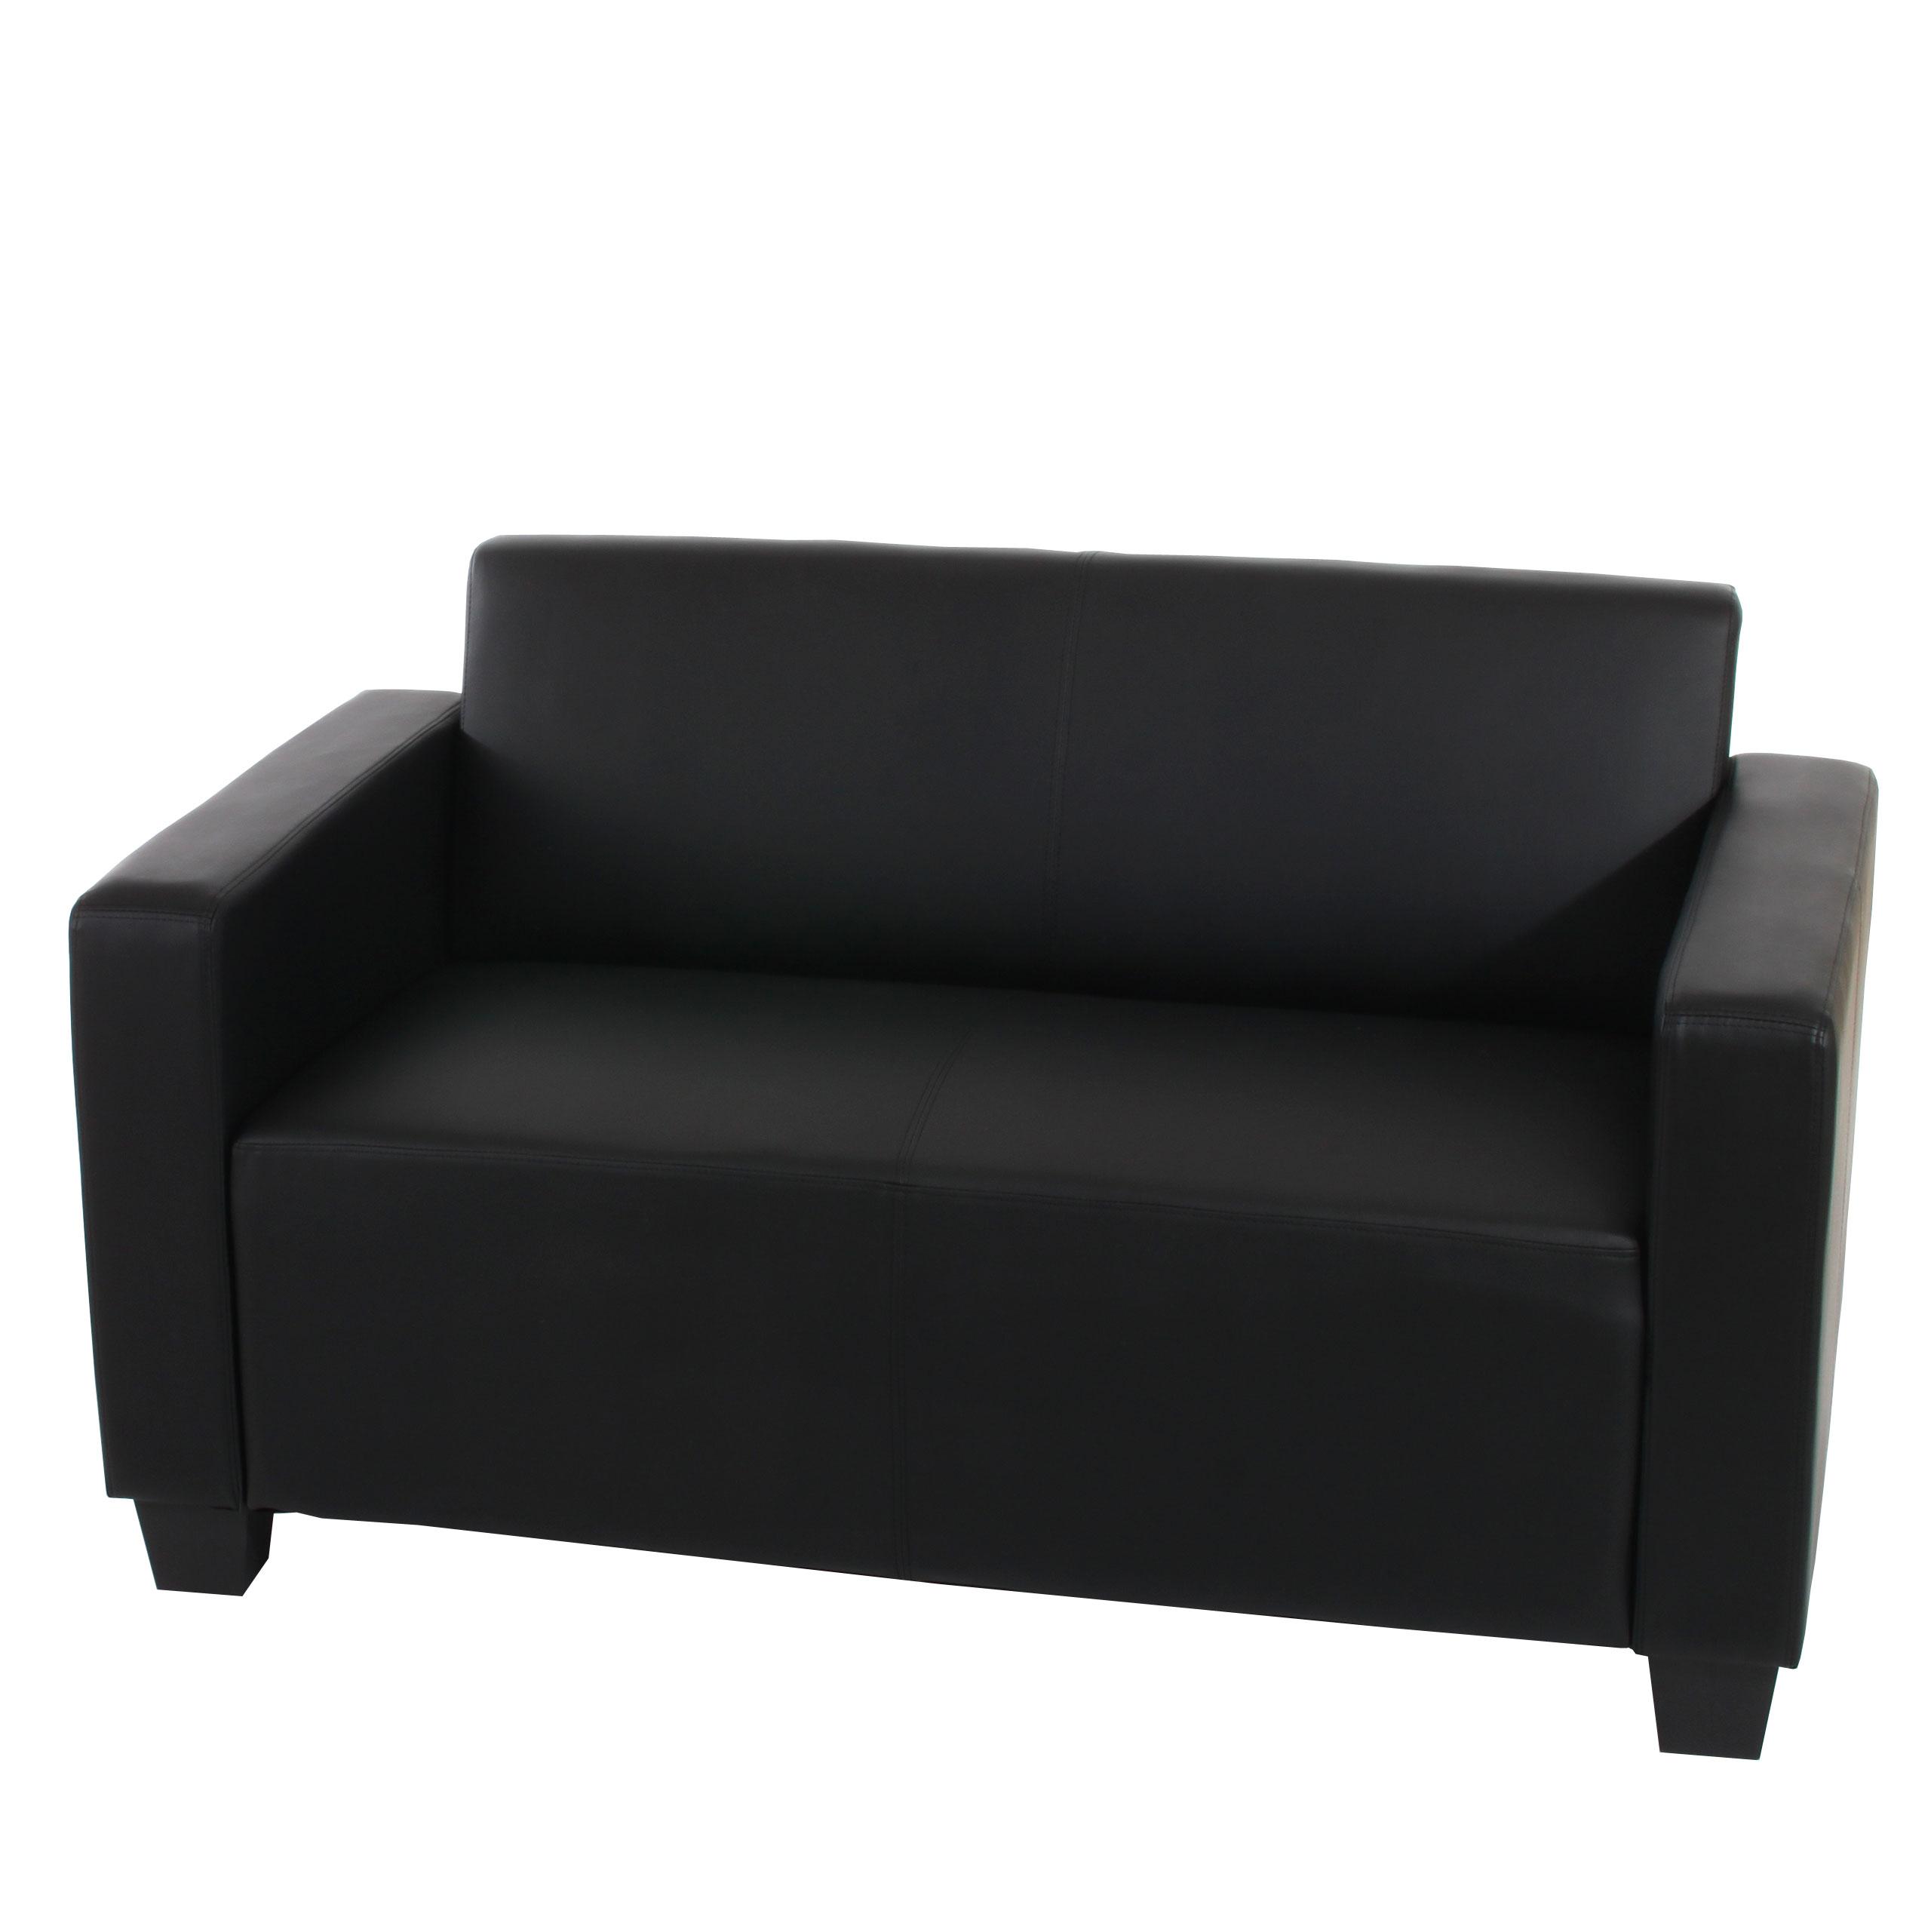 Sofa RODDY, Zweisitzer. Elegantes Design, sehr bequem, Leder, Farbe Schwarz